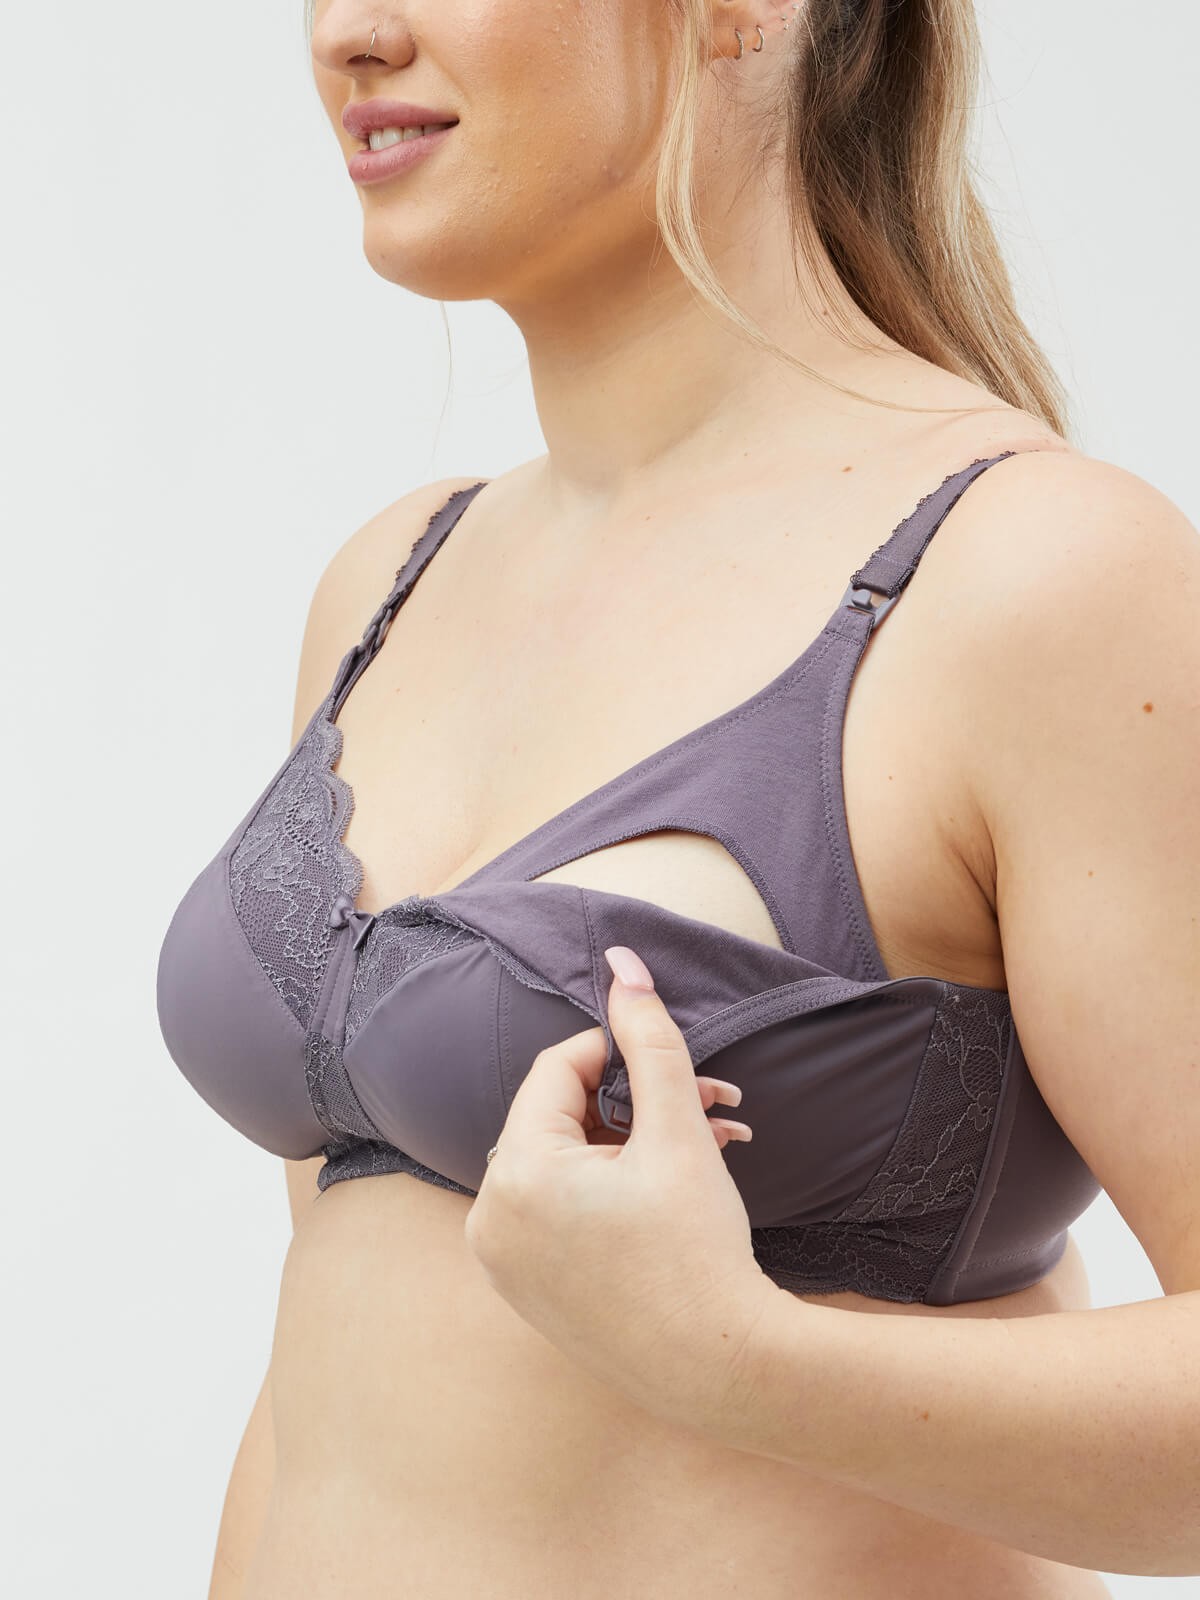 UNBIT Women's Lingerie, Bra Large Front Open Bra Underwear Breast